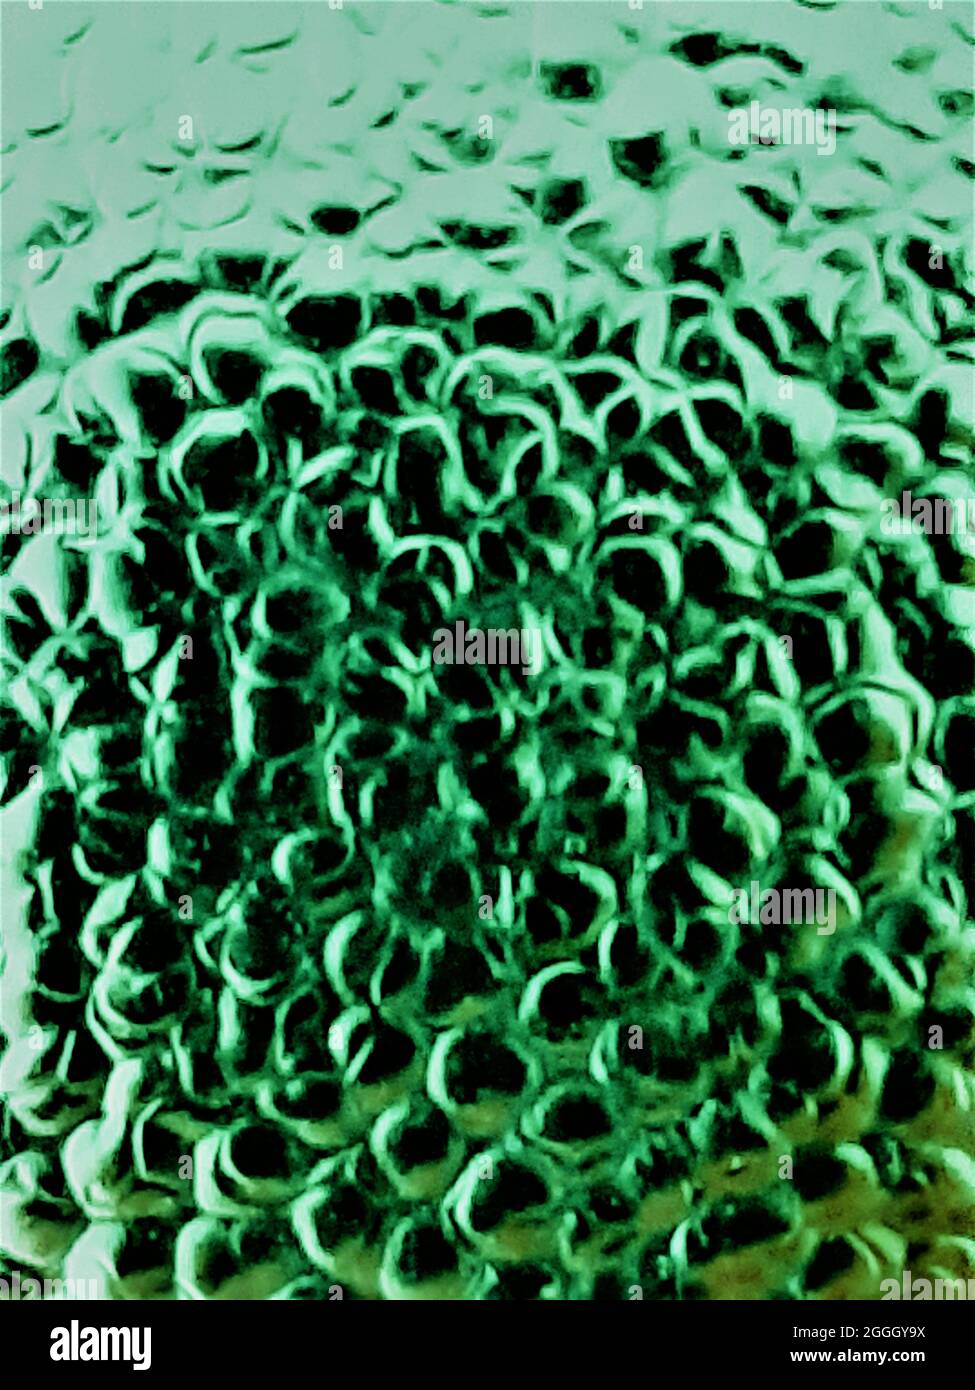 Hindergrund Bild Nahaufnahme Oberfläche Metall grüne Blasen Stock Photo